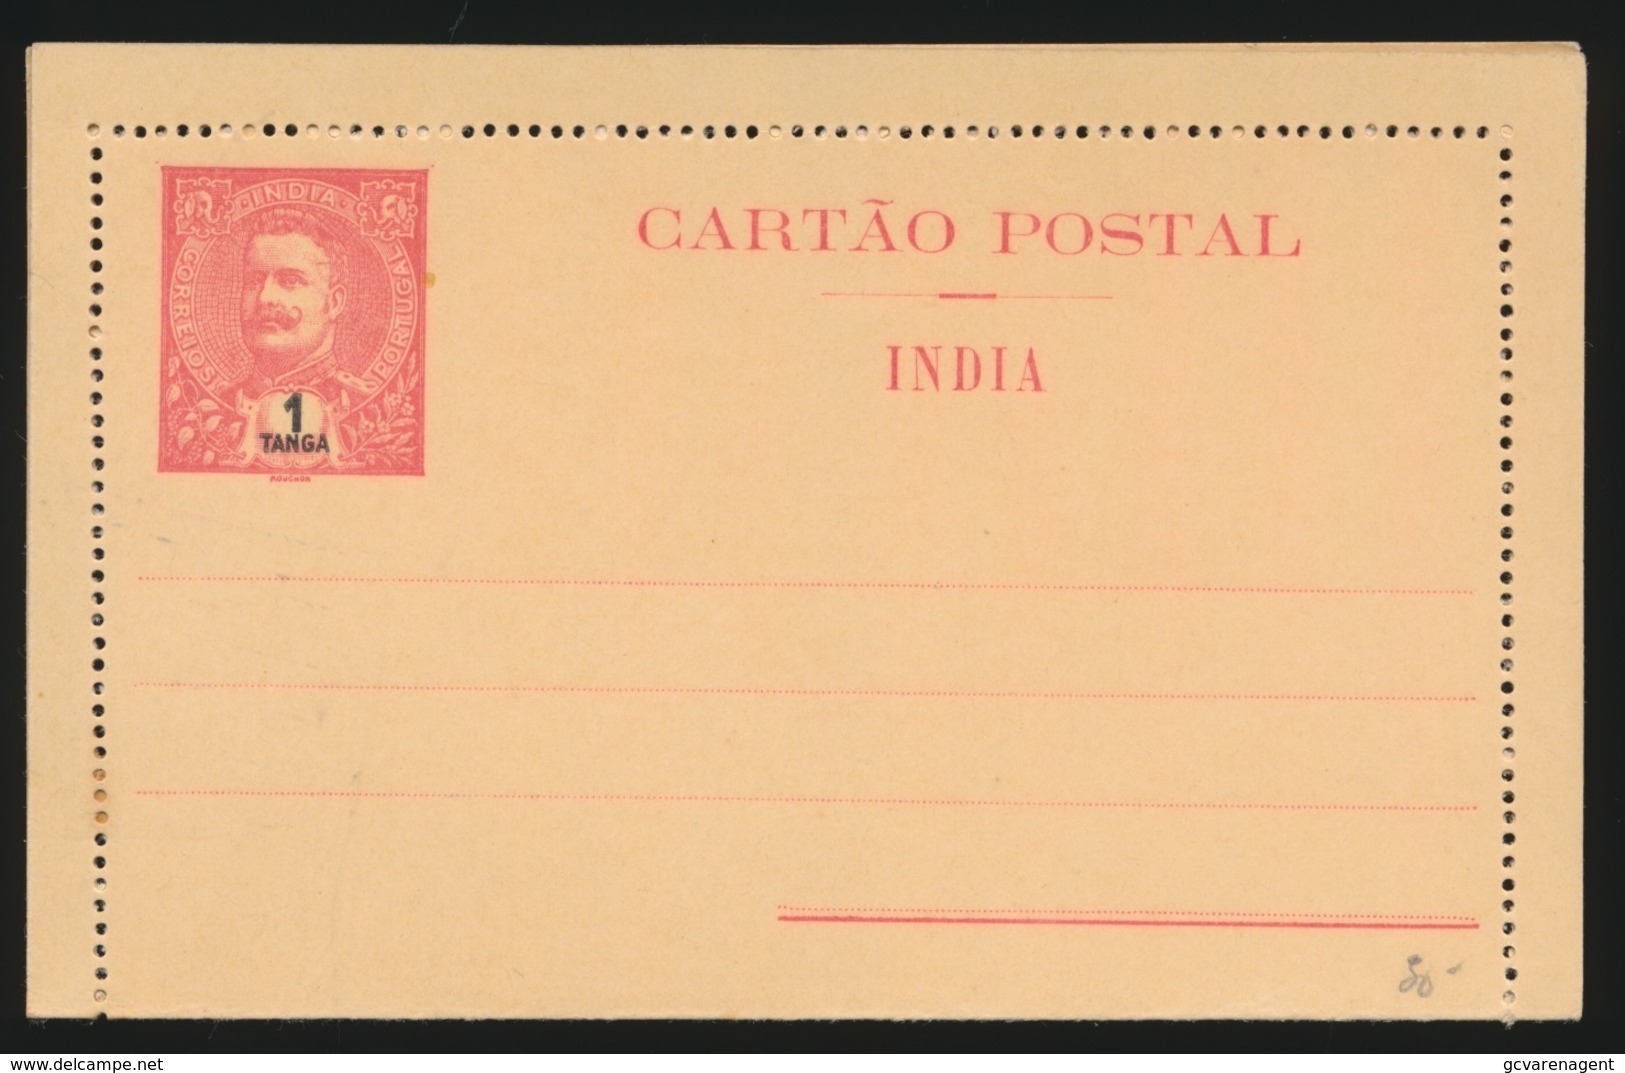 PORTUGAL  CARTAO POSTAL  INDIA  - 1 TANGA - Inde Portugaise